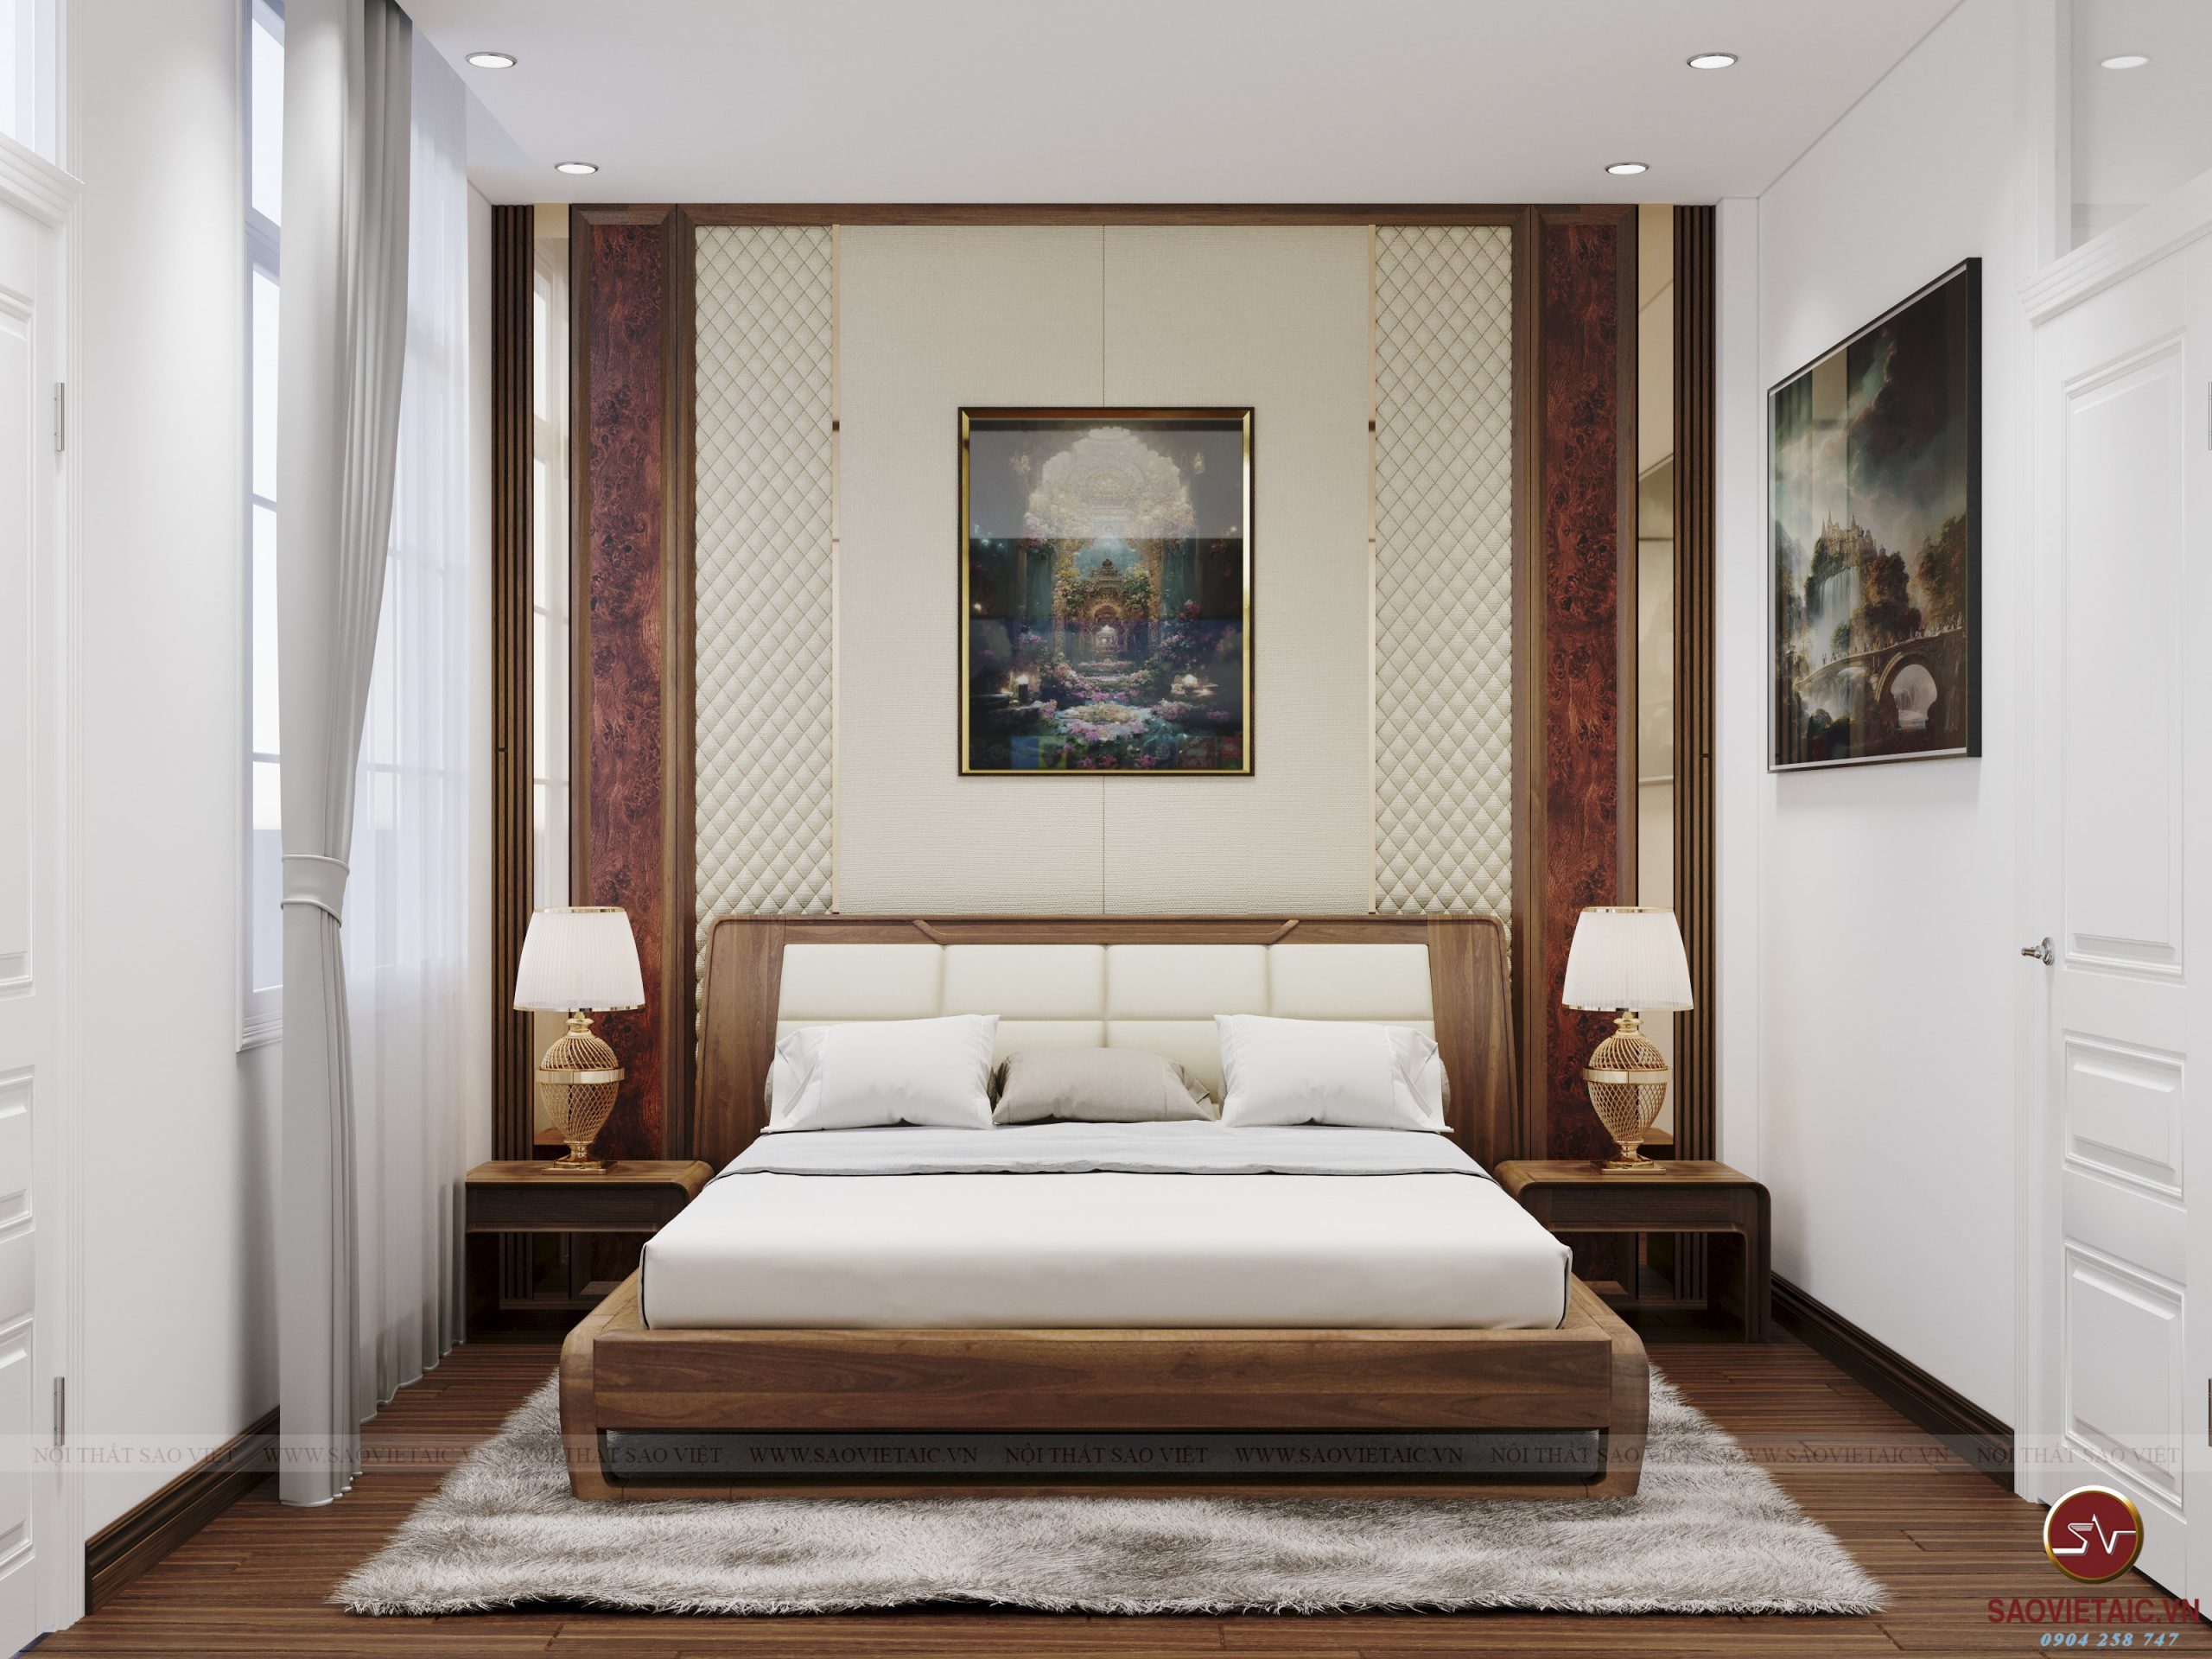 Cải tạo phòng ngủ cũ đón Tết “siêu đẹp”, tối ưu diện tích